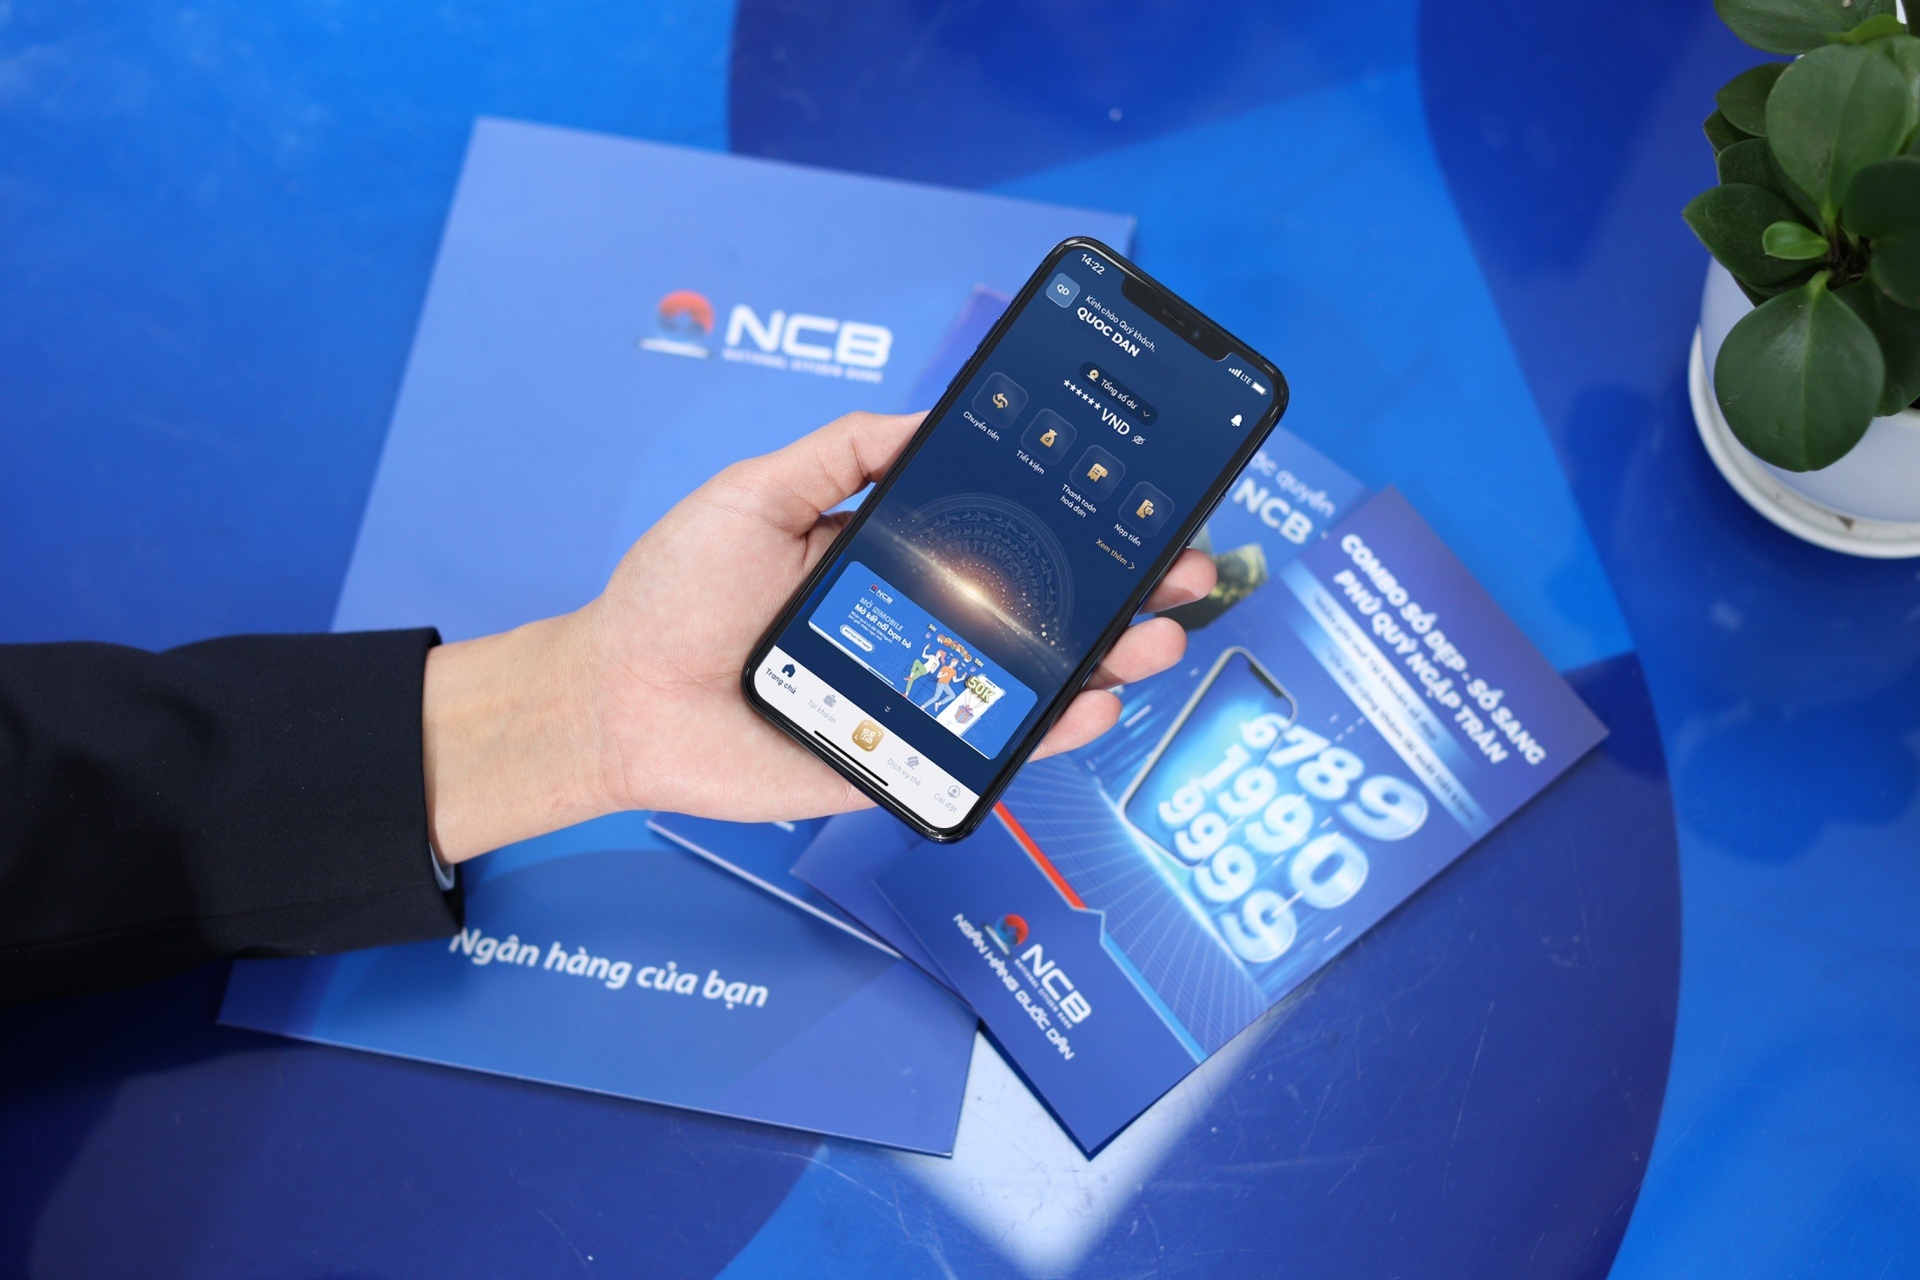 NCB iziMobile app